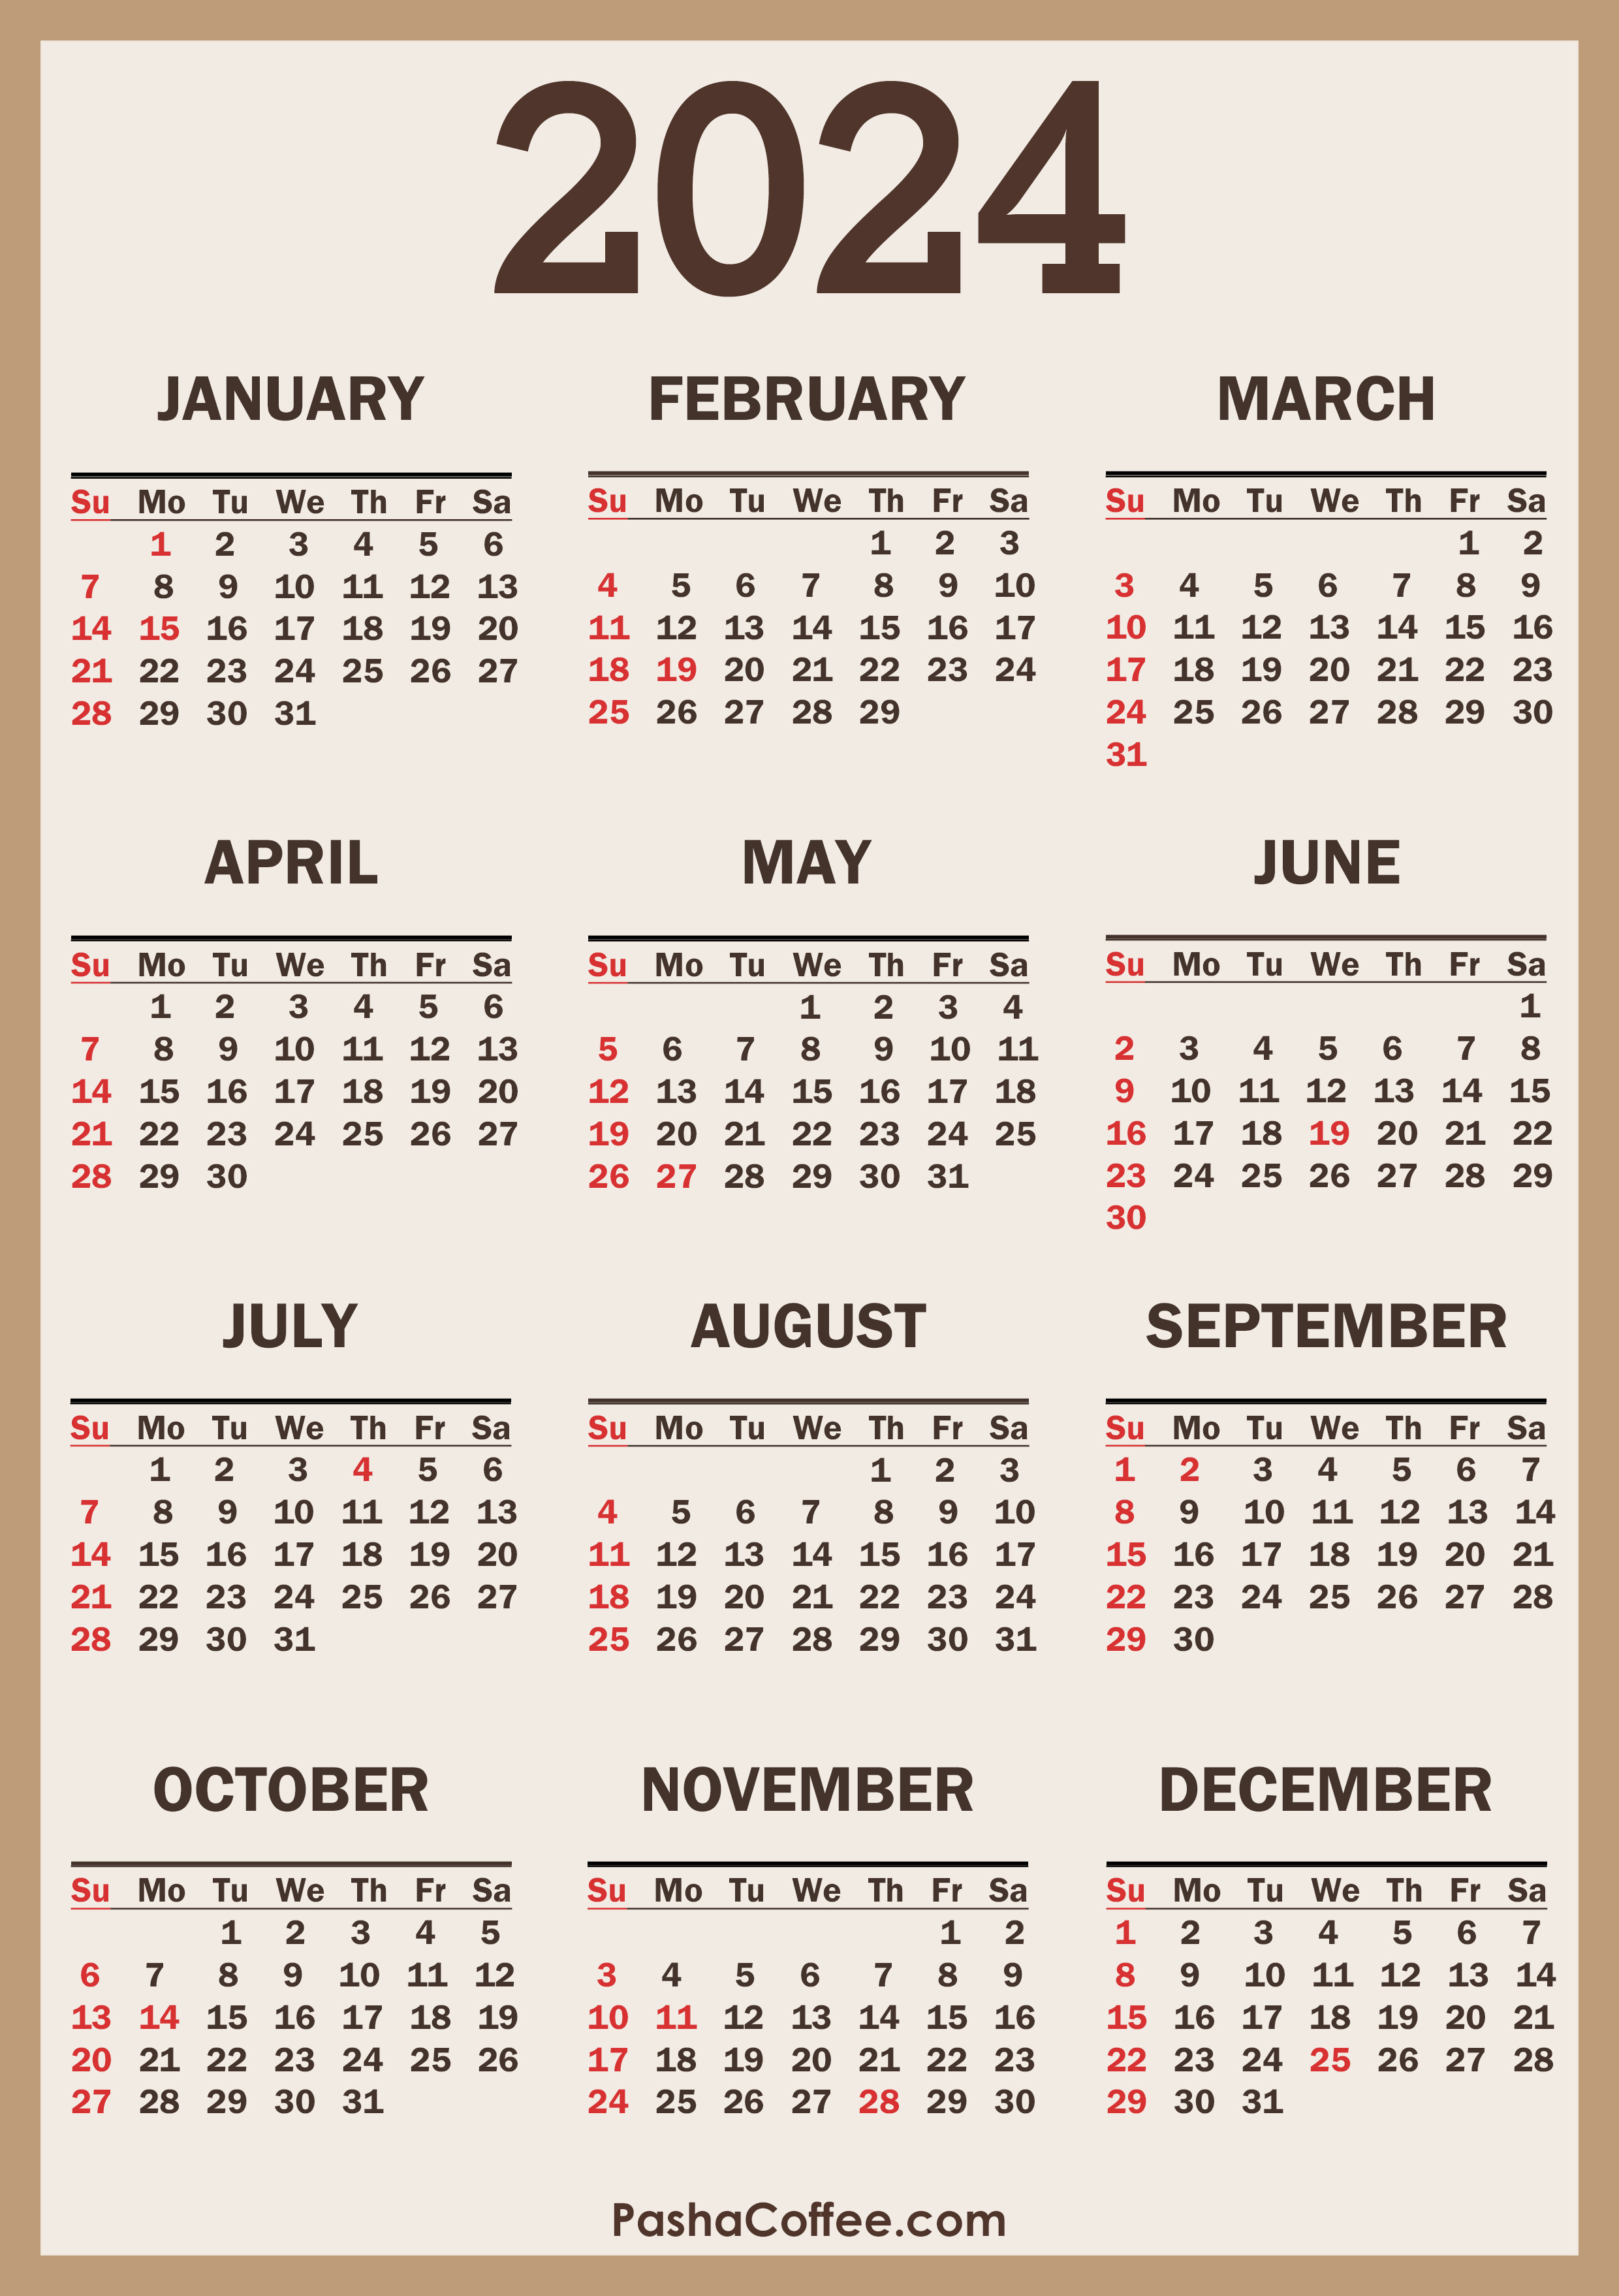 Uaw 2024 Holiday Calendar Mei Dorette